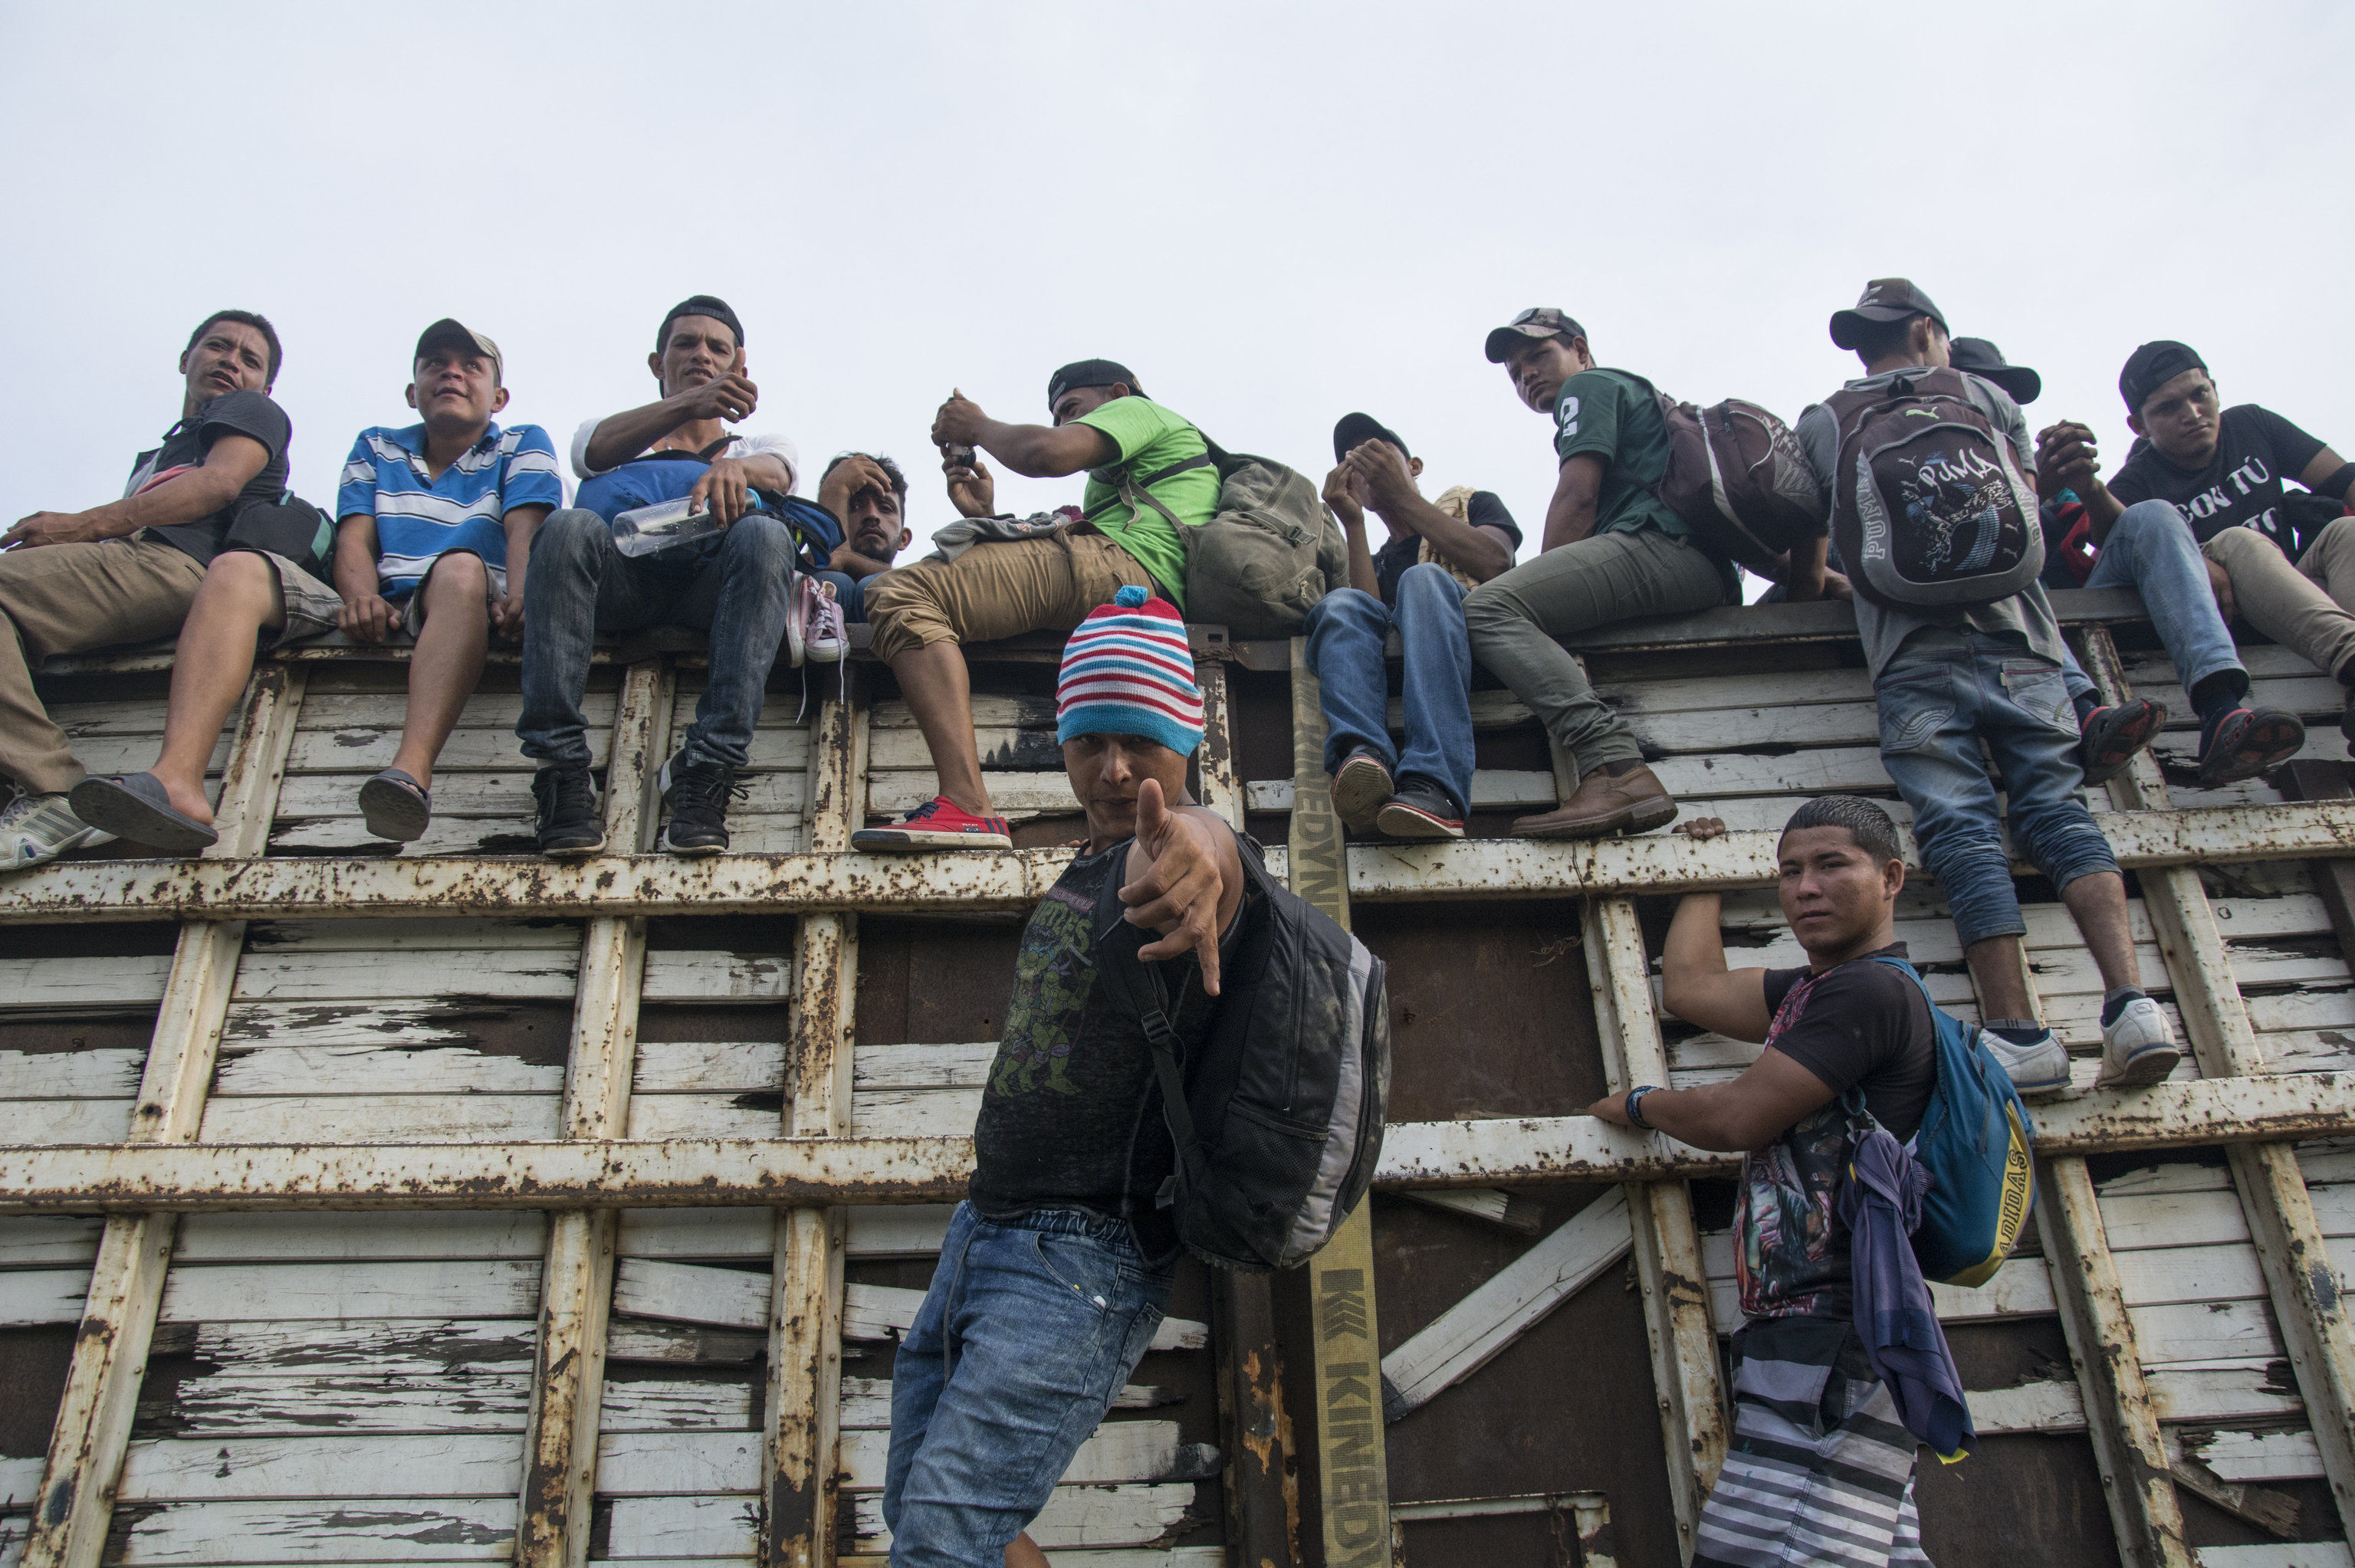 Караван мигрантов из Гондураса направляется в США